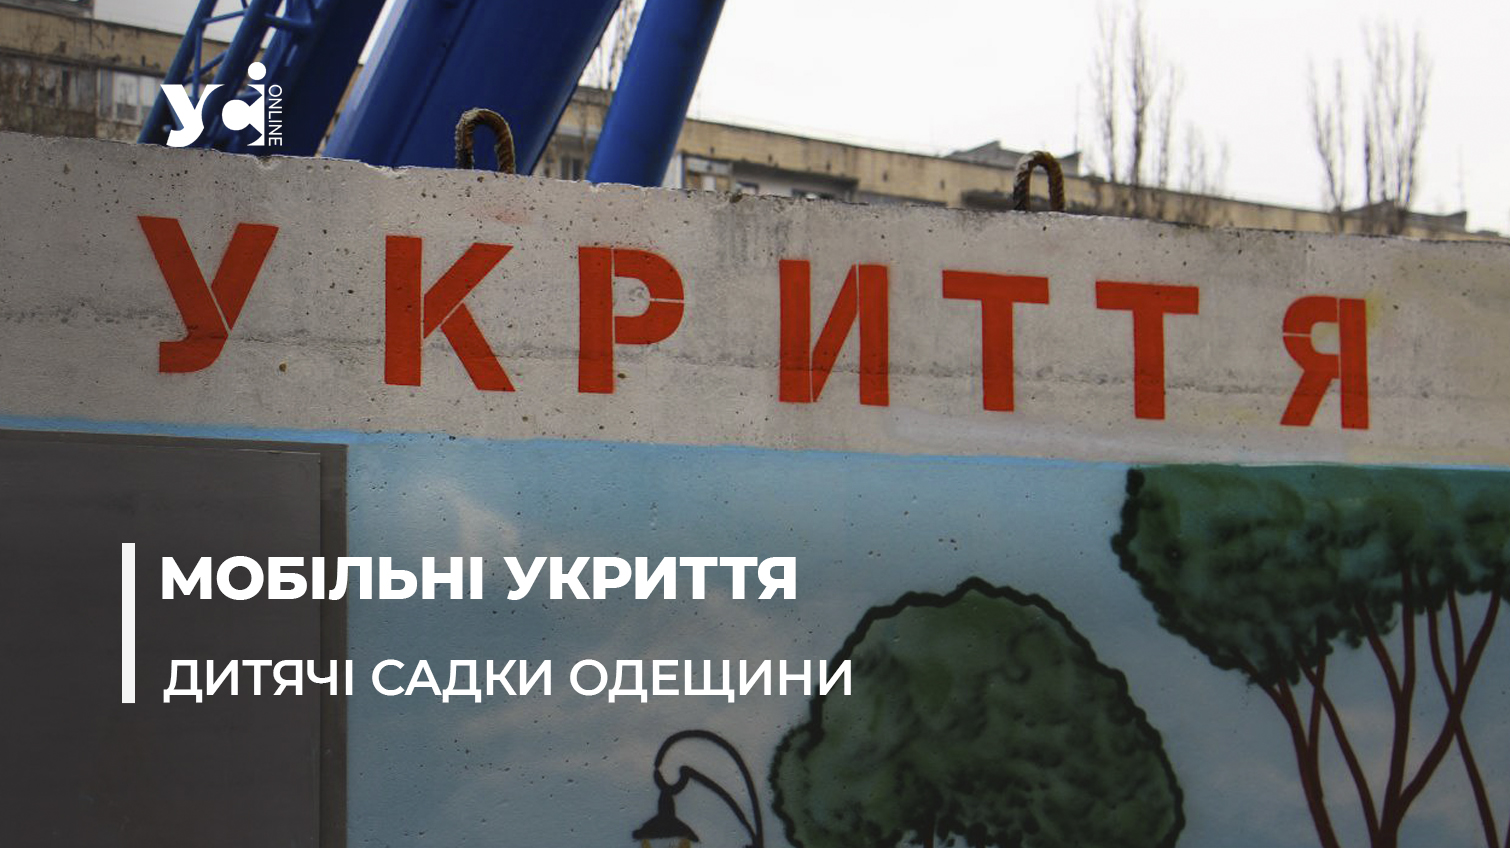 Дитячі садочки Одещини облаштовують мобільними укриттями «фото»